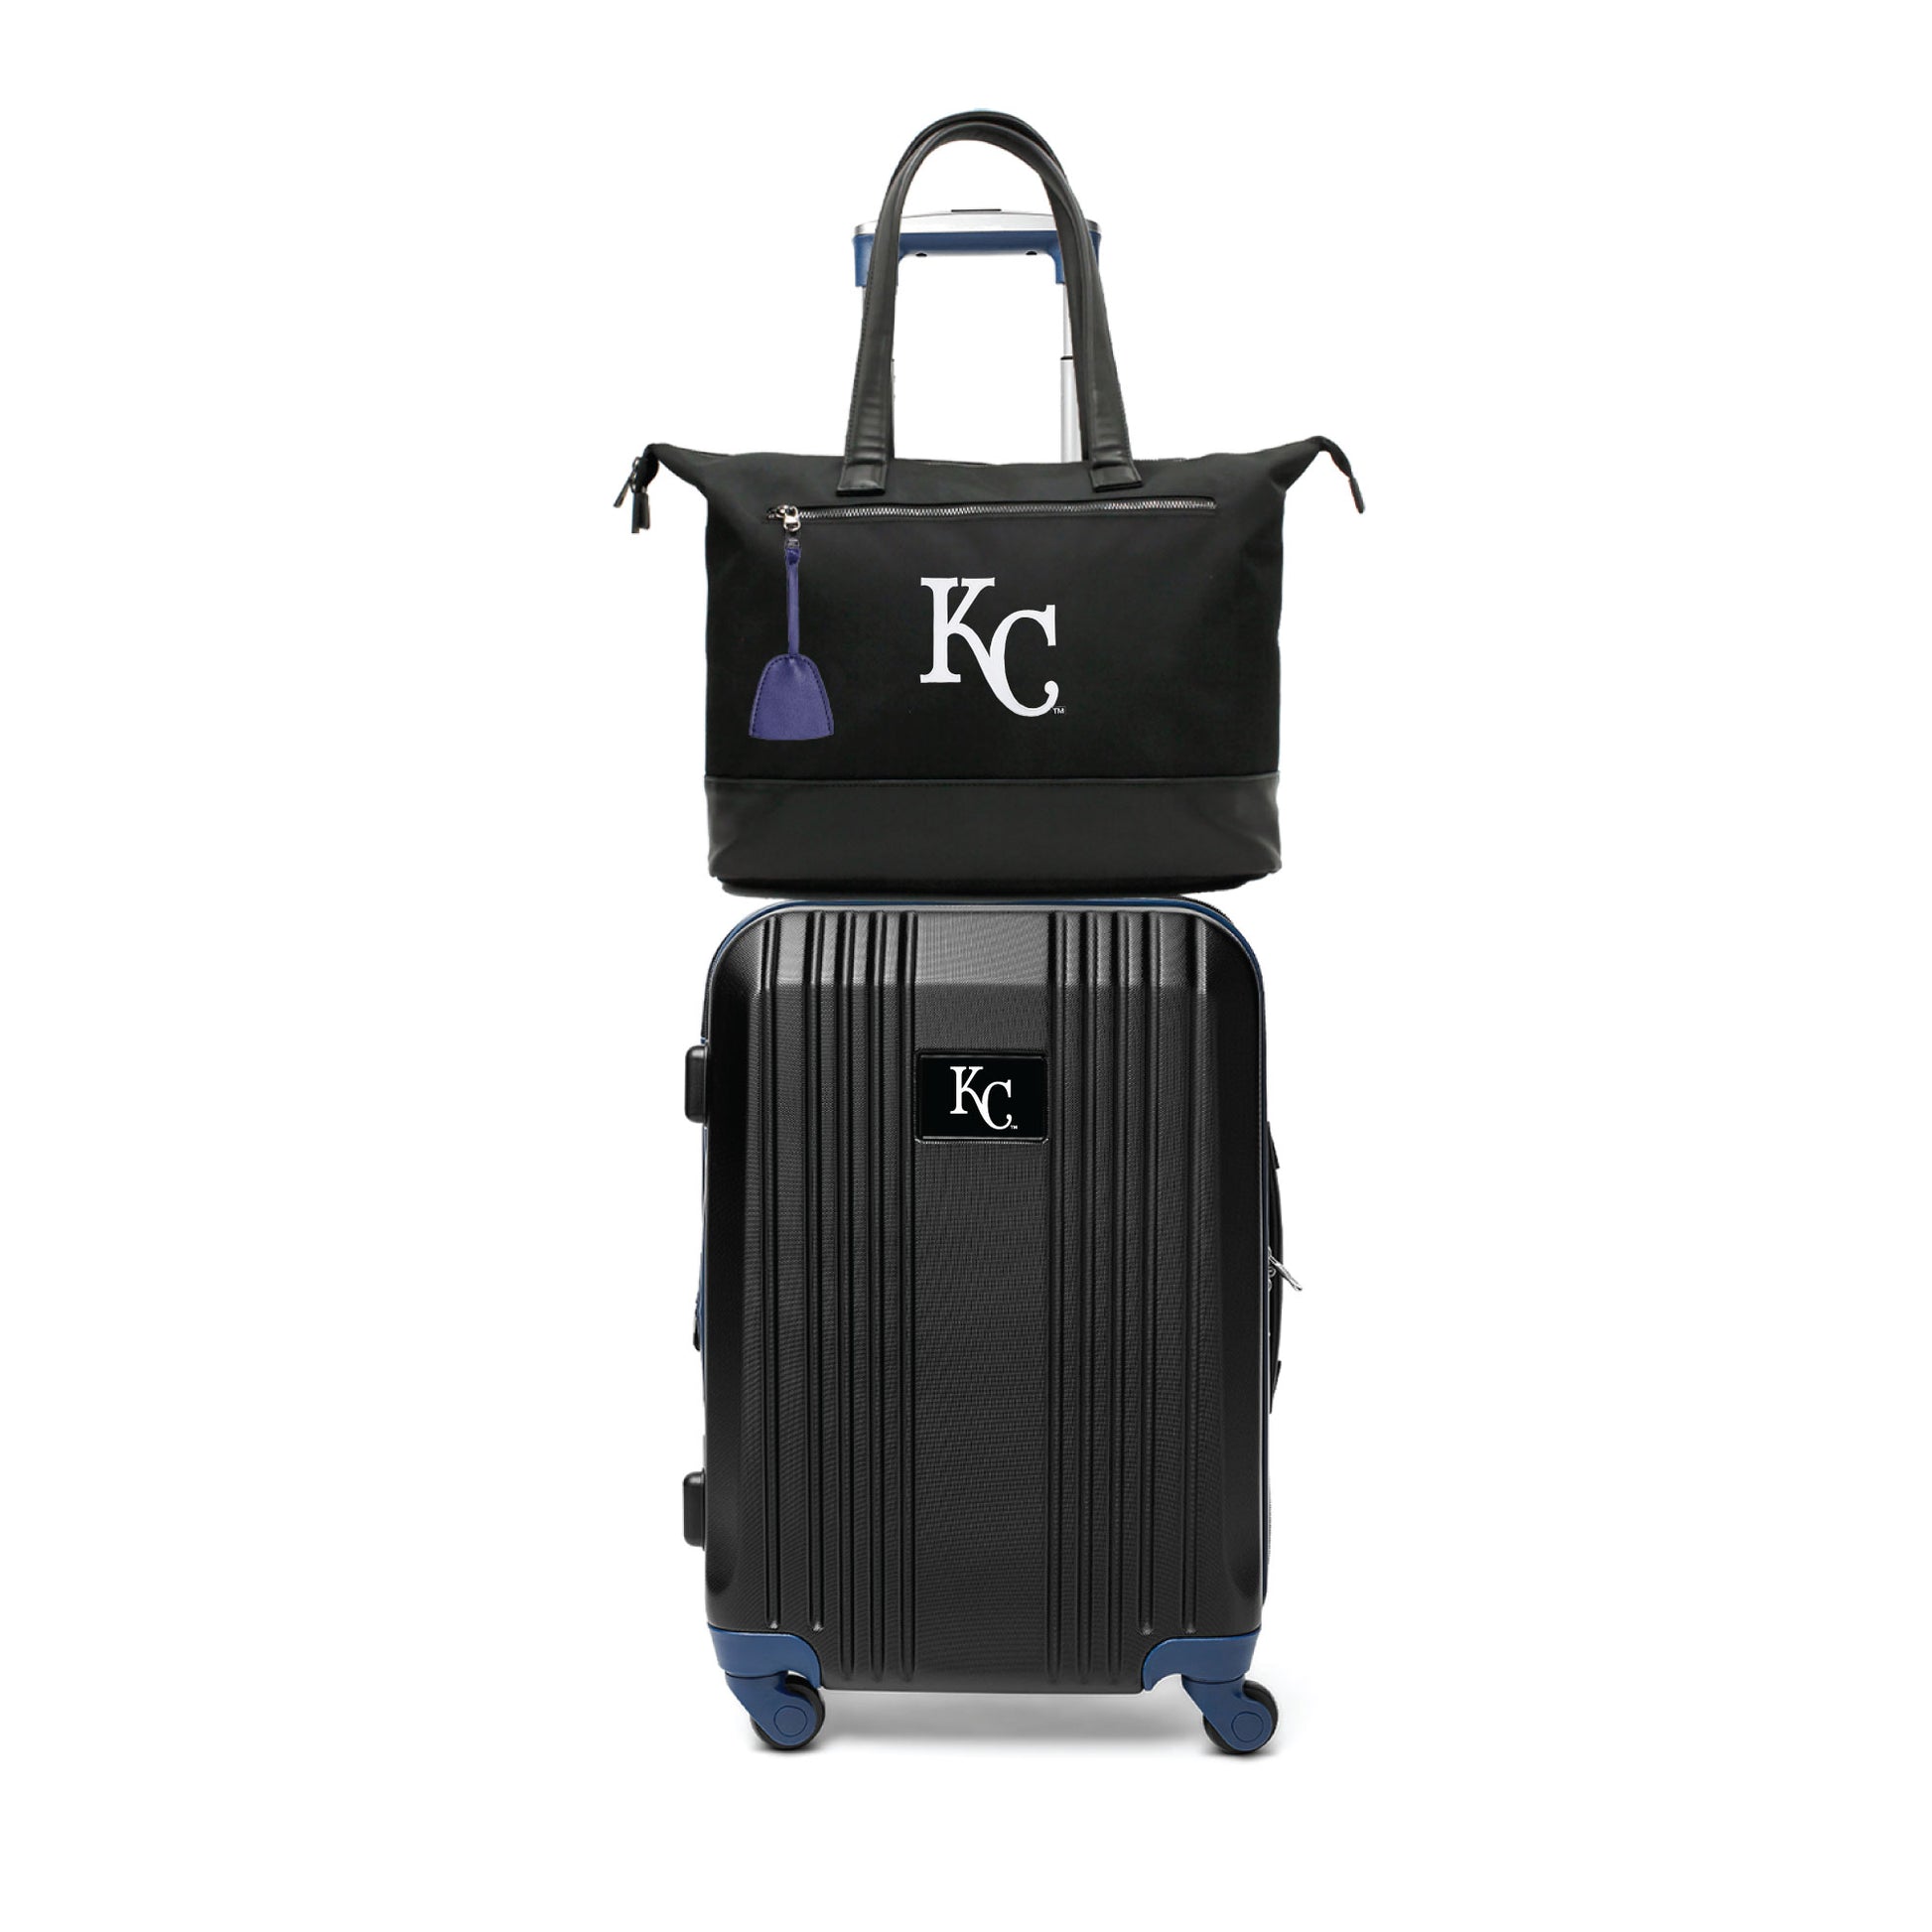 Kansas City Royals Premium Laptop Tote Bag and Luggage Set